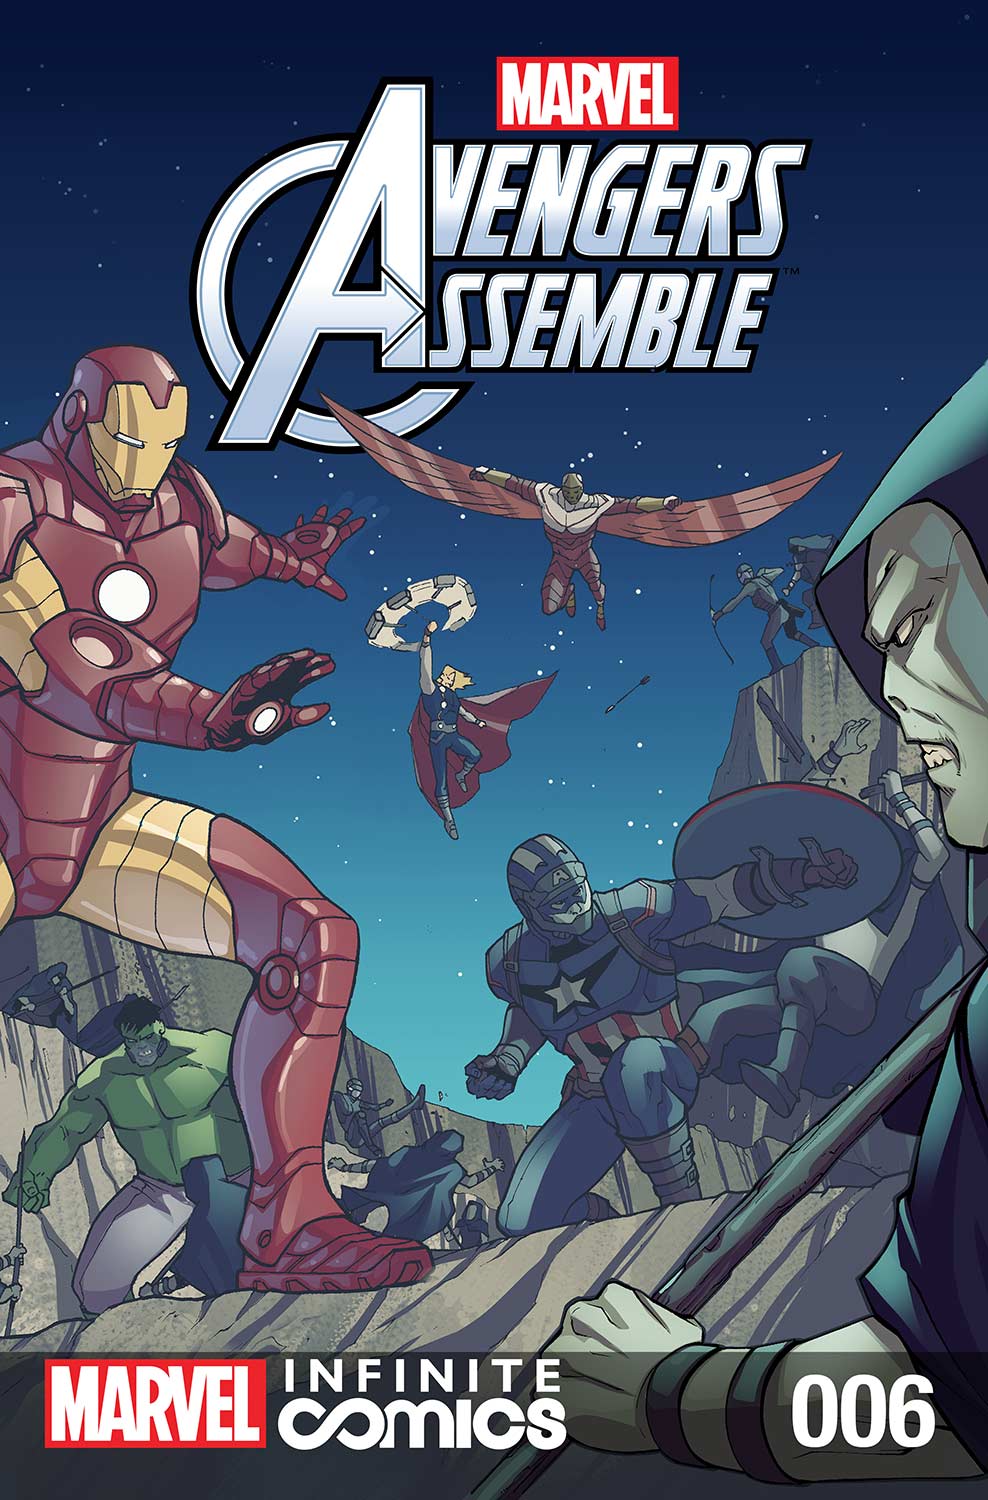 Marvel Avengers Assemble Infinite Comic (2016) #6